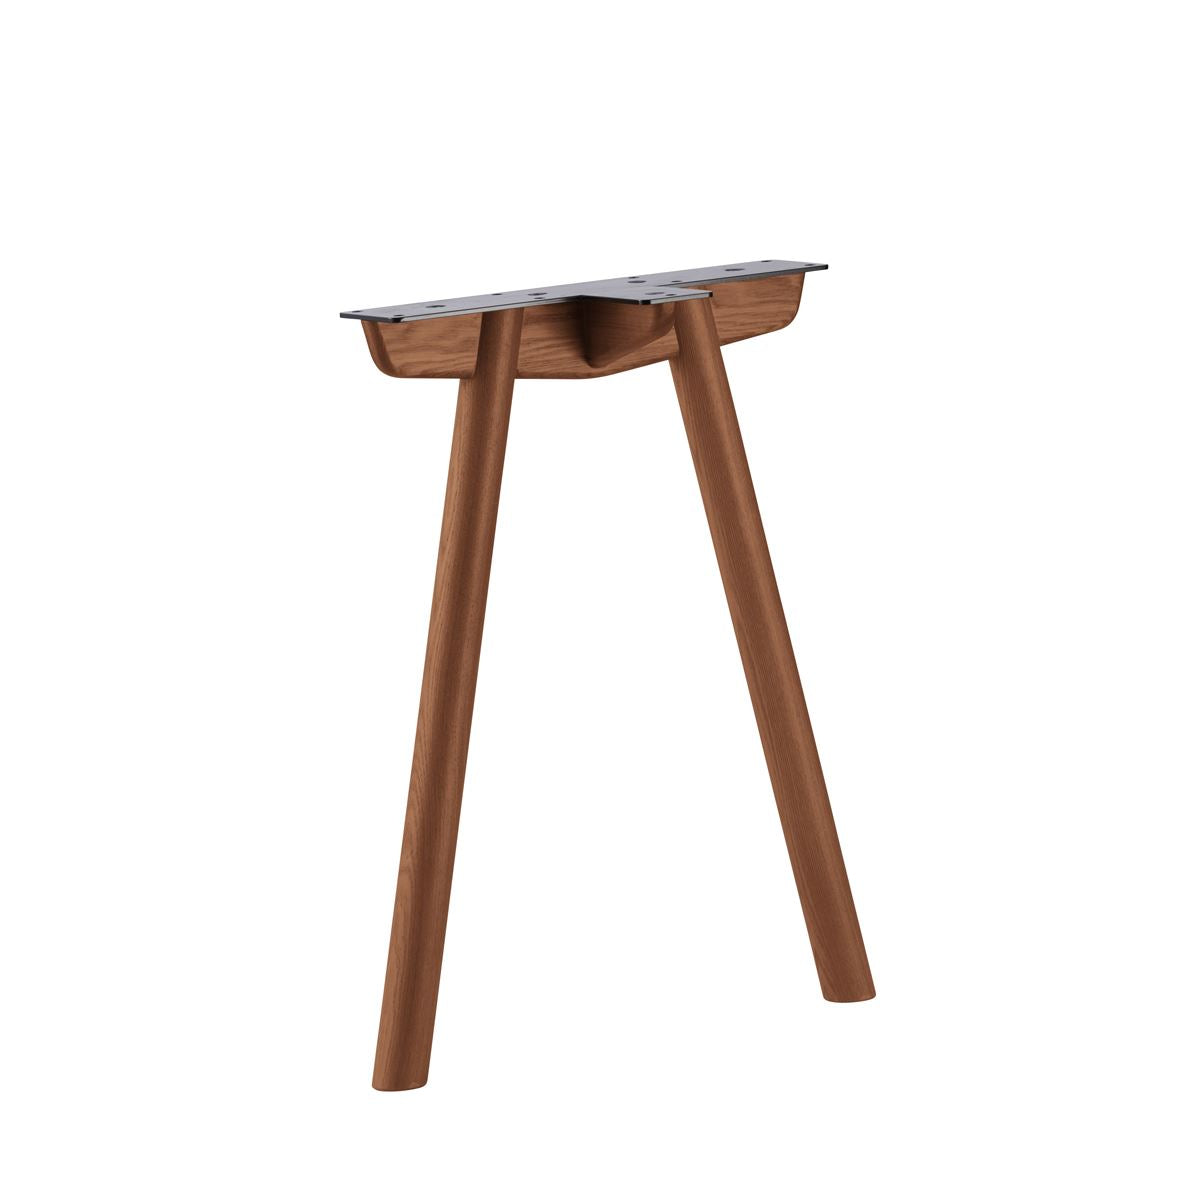 KUUM  Table W1600 × D800 - アッシュ無垢材ナチュラル / クーム テーブル